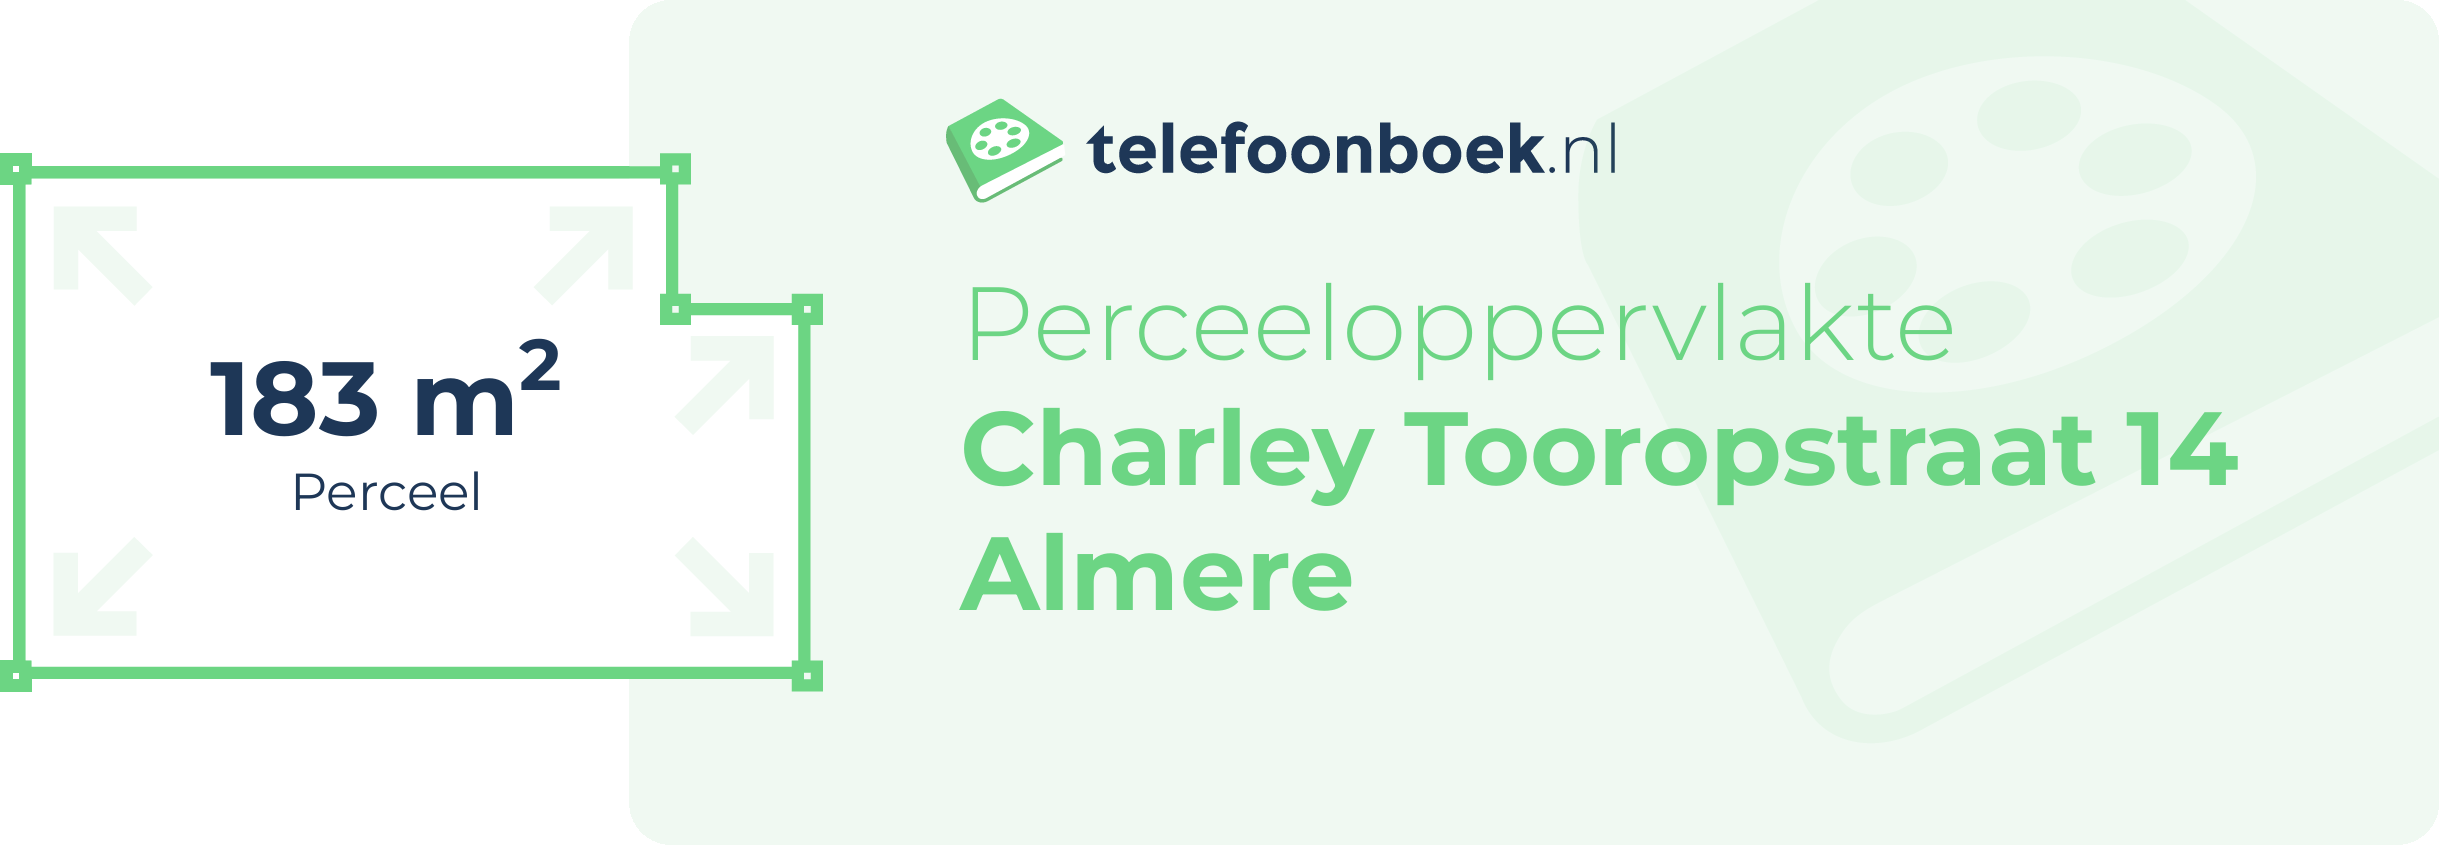 Perceeloppervlakte Charley Tooropstraat 14 Almere